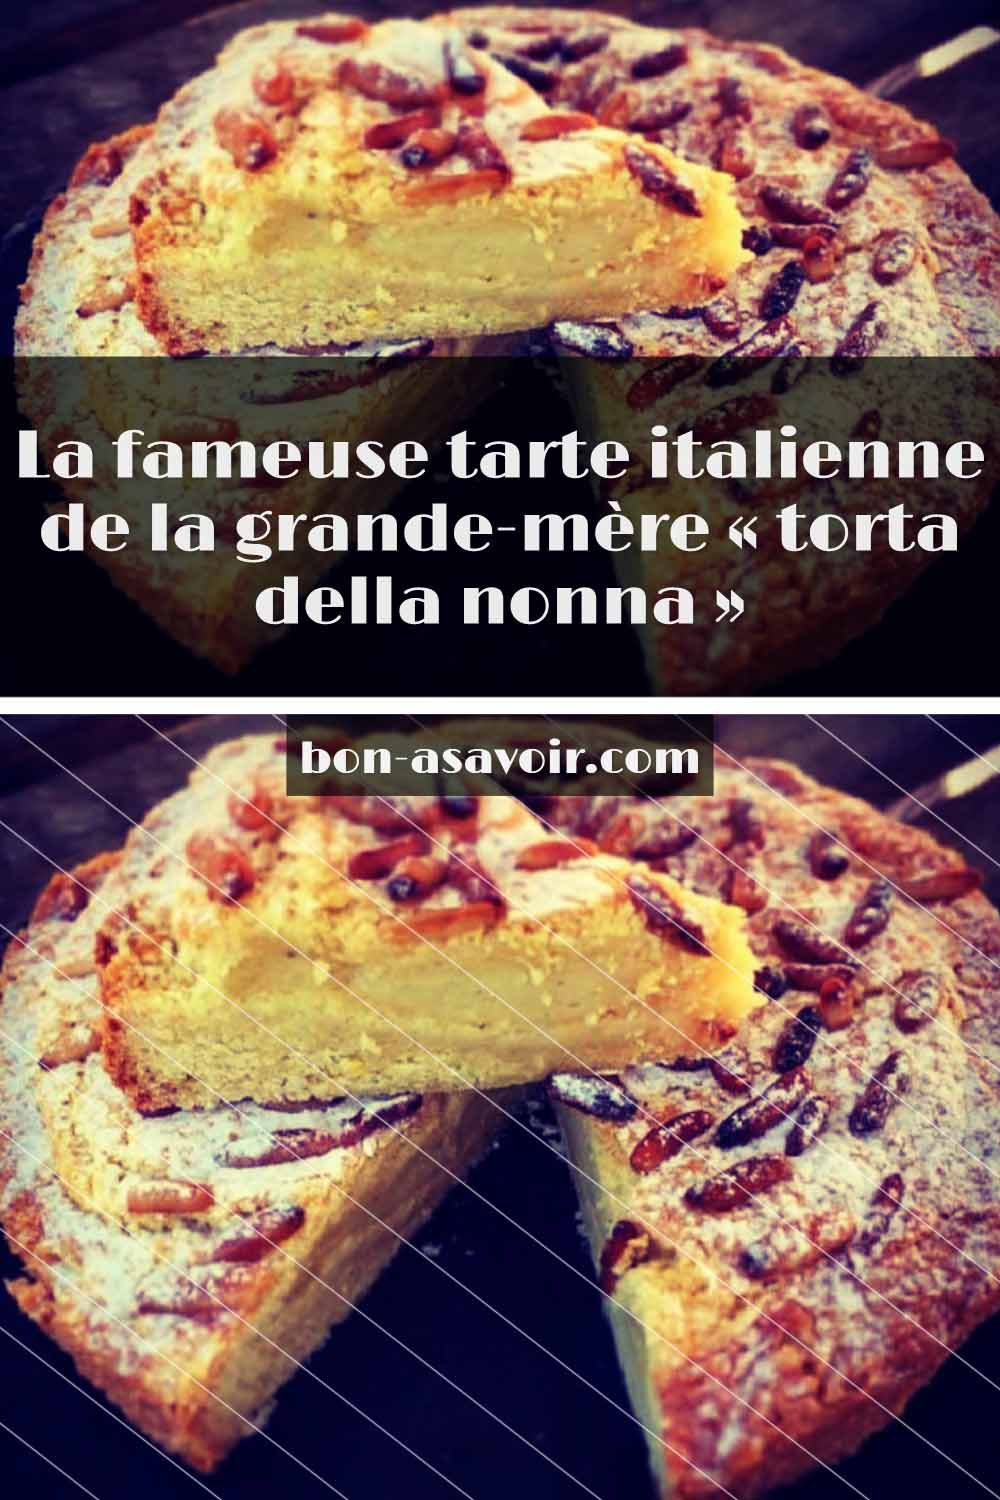 La fameuse tarte italienne de la grande-mère « torta della nonna »